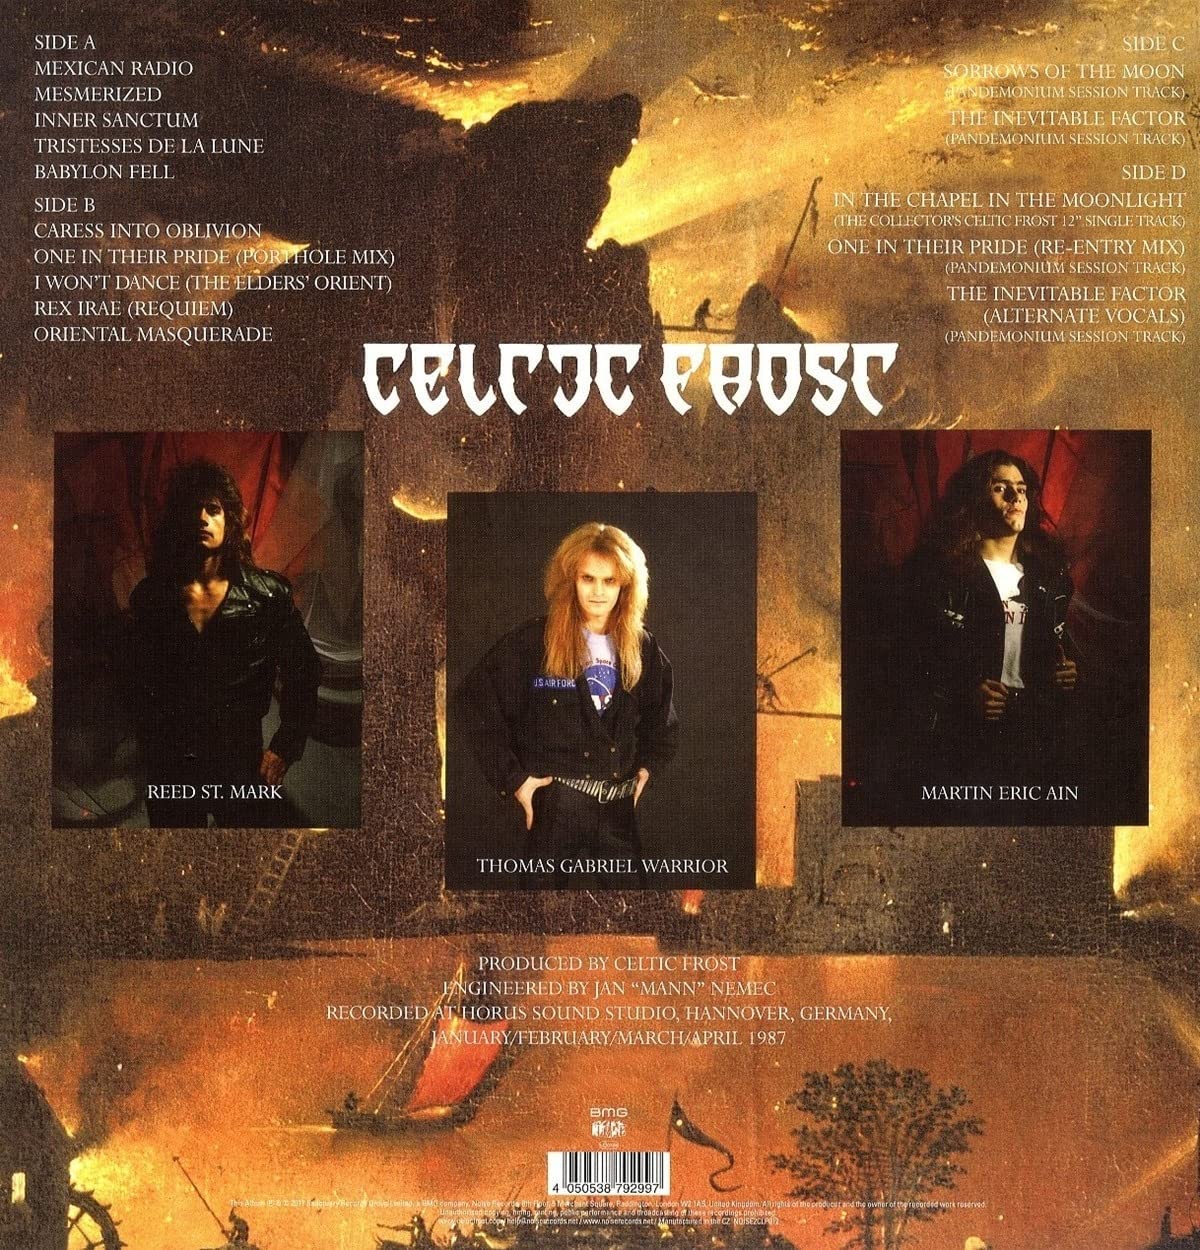 Celtic Frost - Into The Pandemonium - 2LP